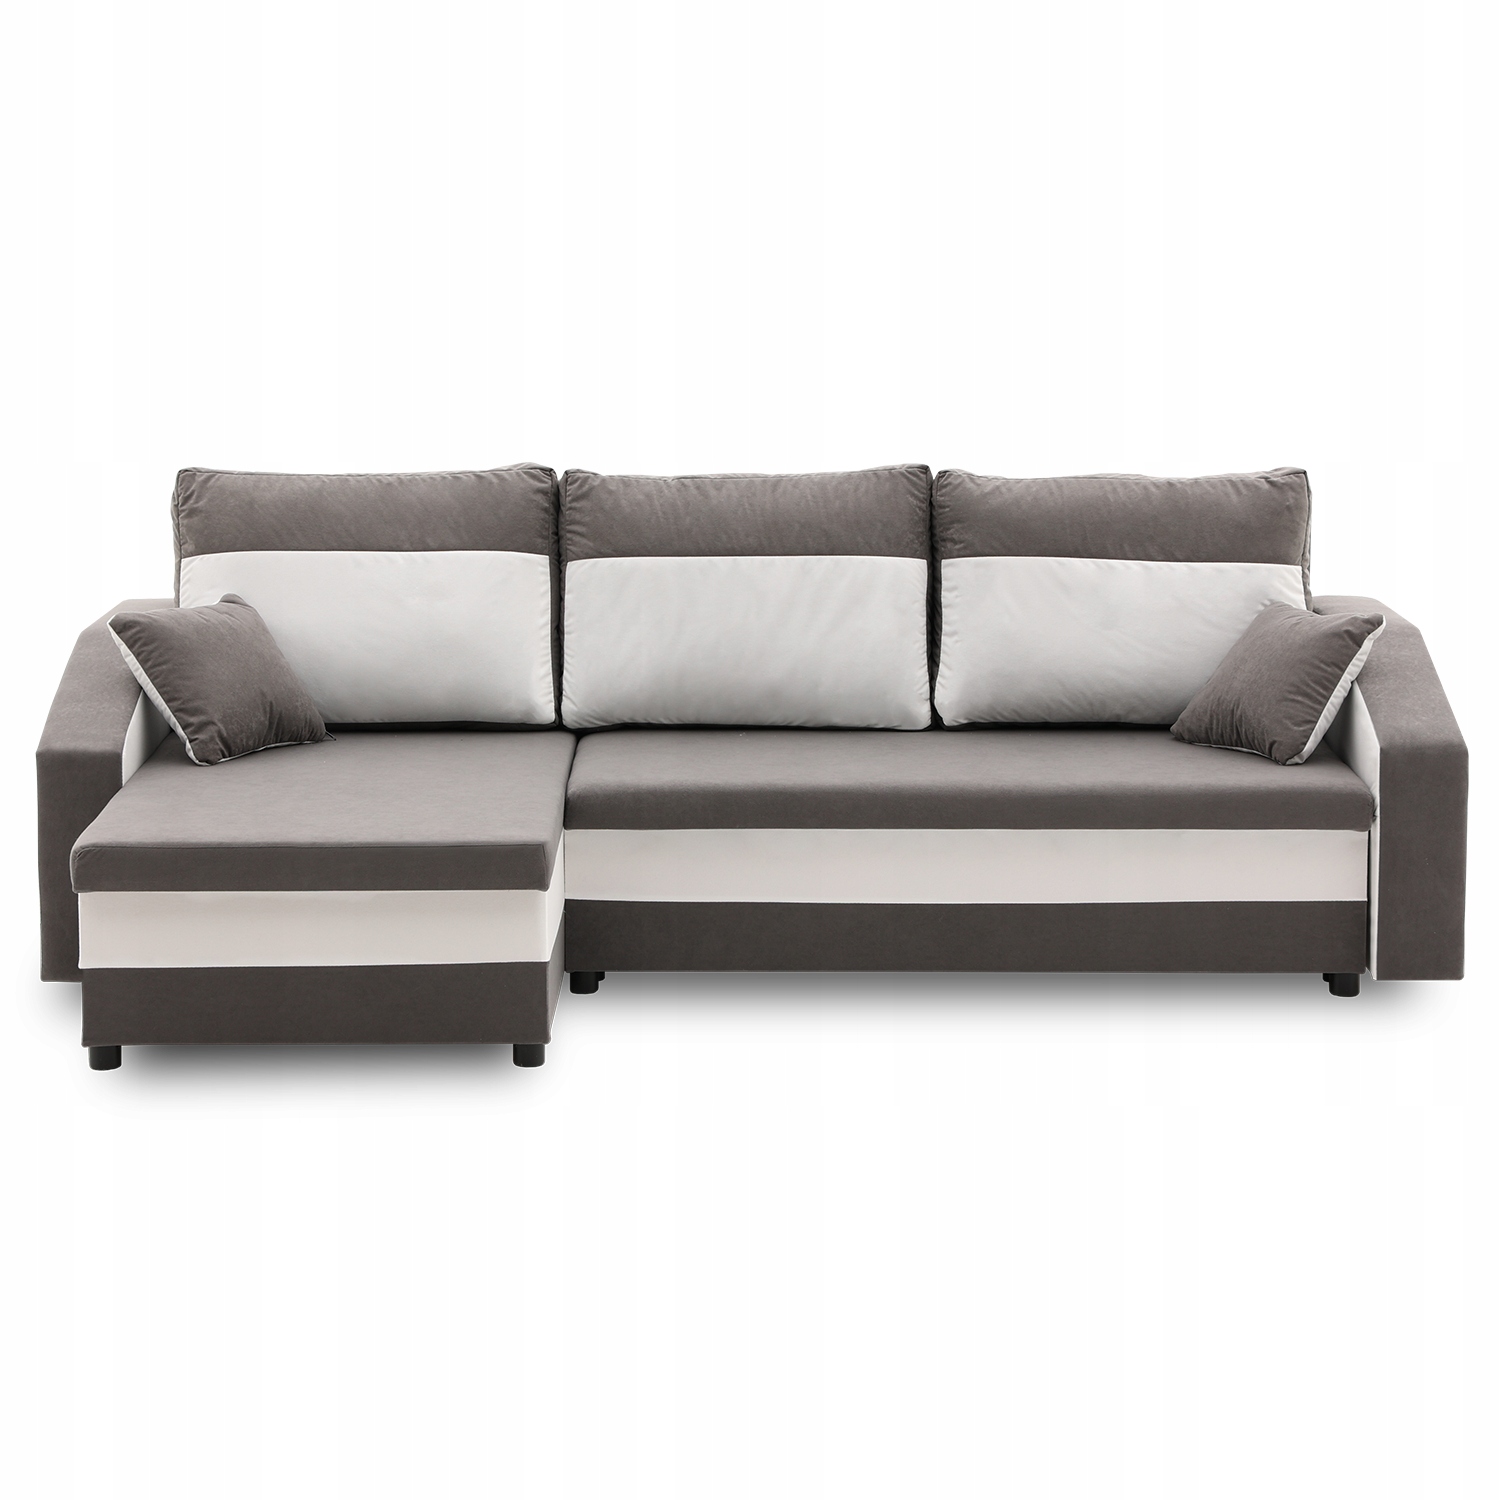 Narożnik HEWLET funkcja SPANIA łóżko ROGÓWKA sofa (123_HEWLET) • Cena,  Opinie • Narożniki 9417100885 • Allegro